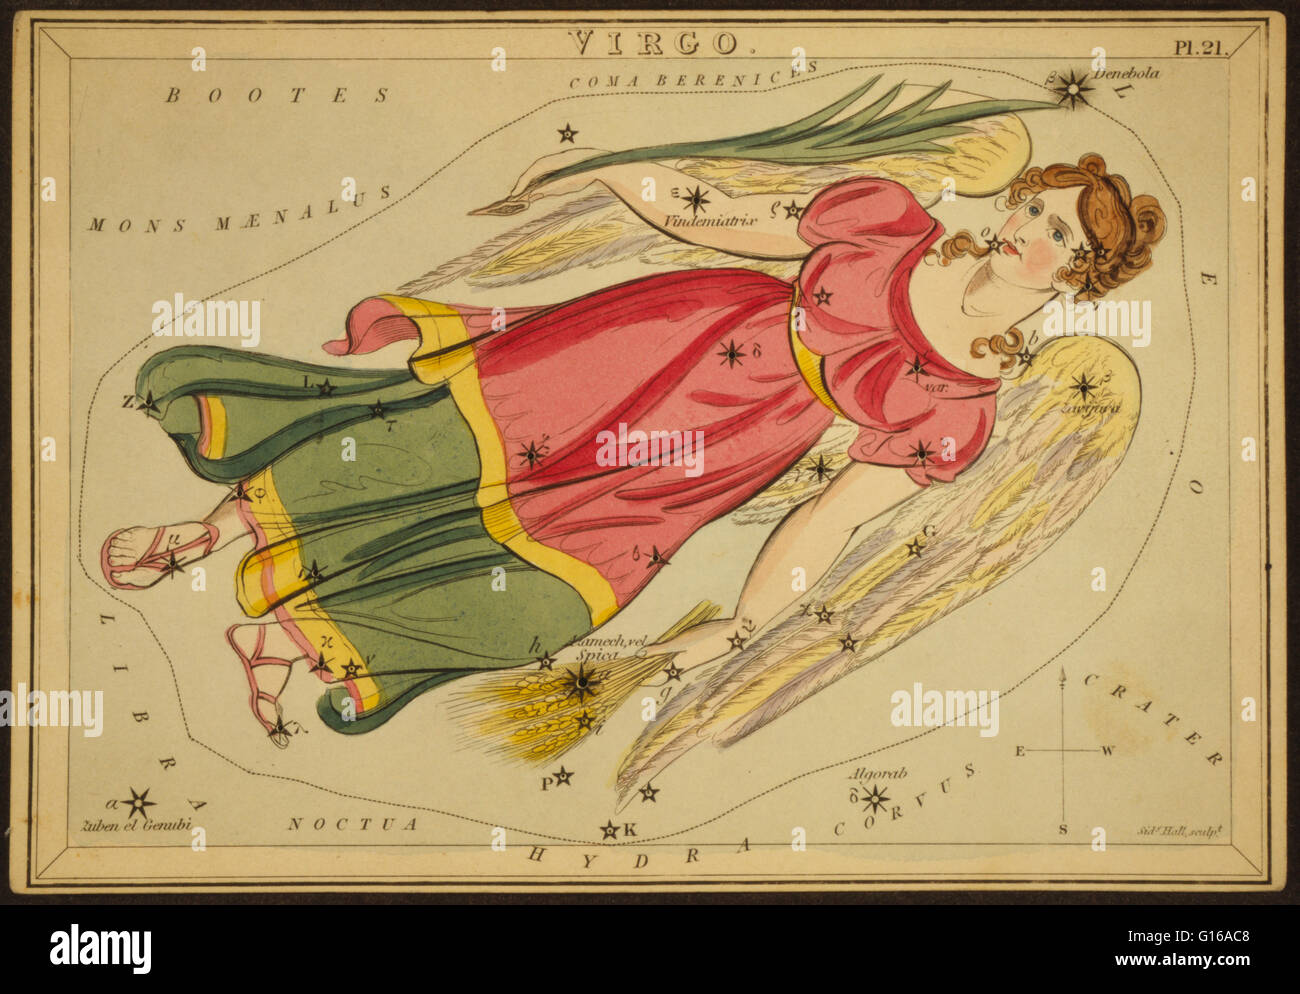 Astronomische Diagramm zeigt eine geflügelten Jungfrau Holding Weizen in ihrer linken Hand und eine Lilie in der rechten Hand bilden die Konstellation. Jungfrau ist eines der Sternbilder des Tierkreises. Sein Name ist lateinisch für Jungfrau. Es war eines der 48 Sternbilder gelistet Stockfoto